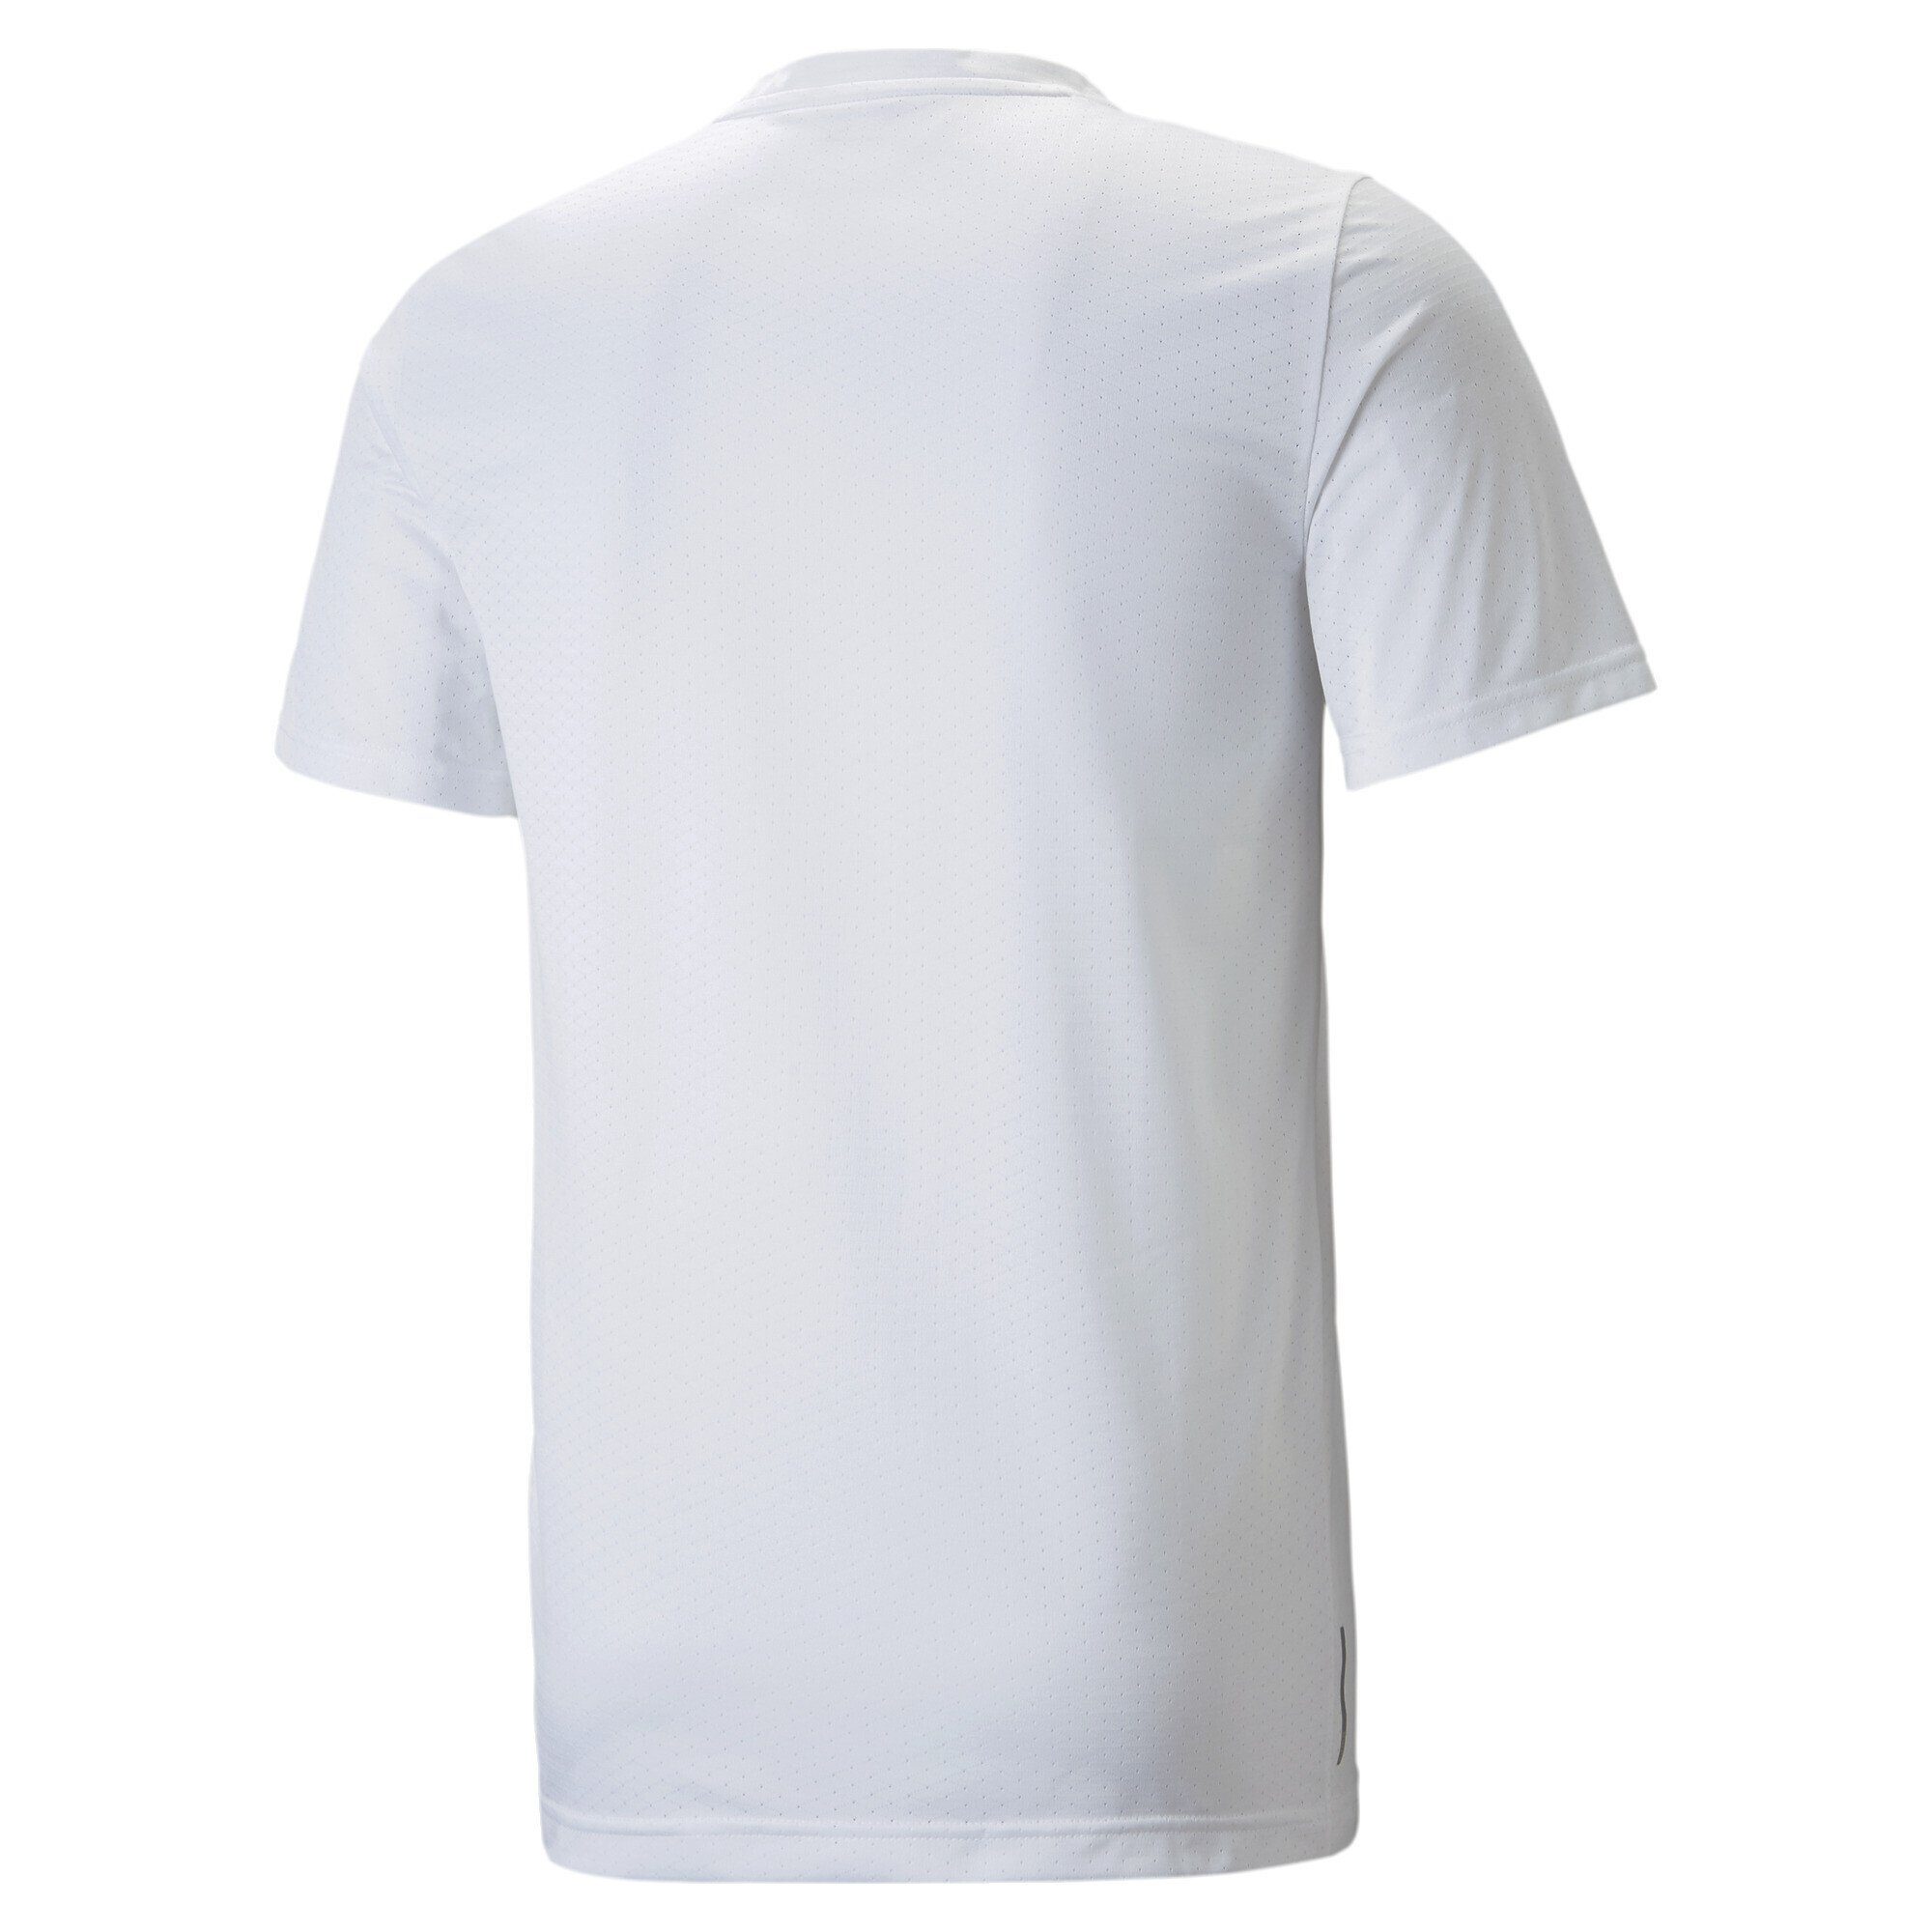 PUMA Trainingsshirt White Blaster Trainingsshirt Favourite Herren